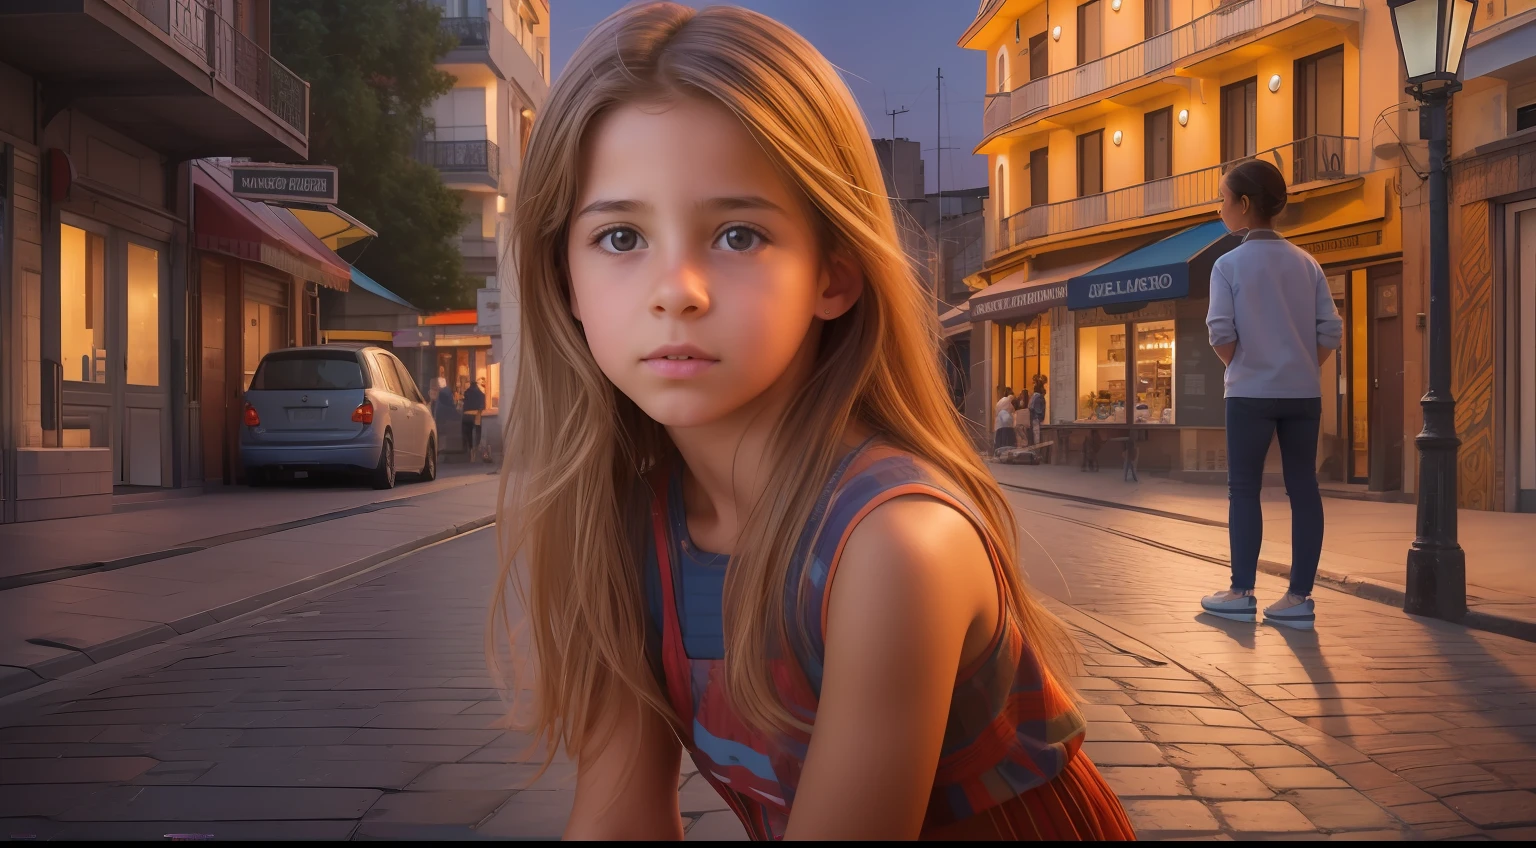 Erstellen Sie ein beeindruckendes hyperrealistisches Bild, das ein faszinierendes 10-jähriges Mädchen aus Uruguay mit authentischen Gesichtszügen zeigt, anmutig vor einem dynamischen und lebendigen Blick auf die Straße am Abend positioniert.